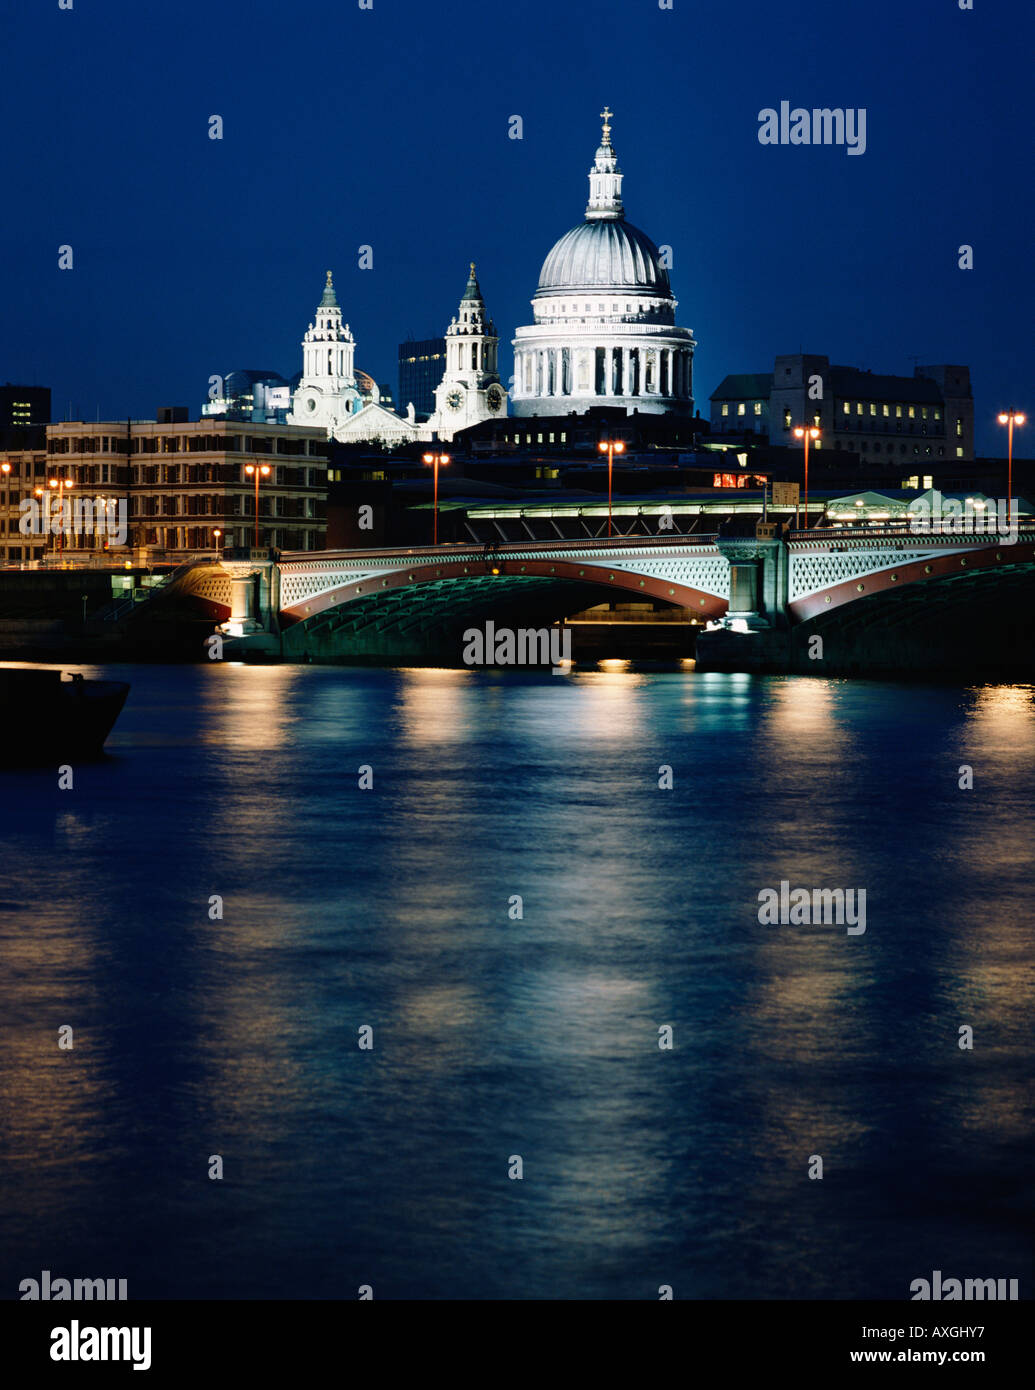 La Cathédrale St Paul et Blackfriars Bridge illuminée la nuit vue sur la Tamise, ville de Londres, Angleterre, Grande-Bretagne, FR, UK Banque D'Images